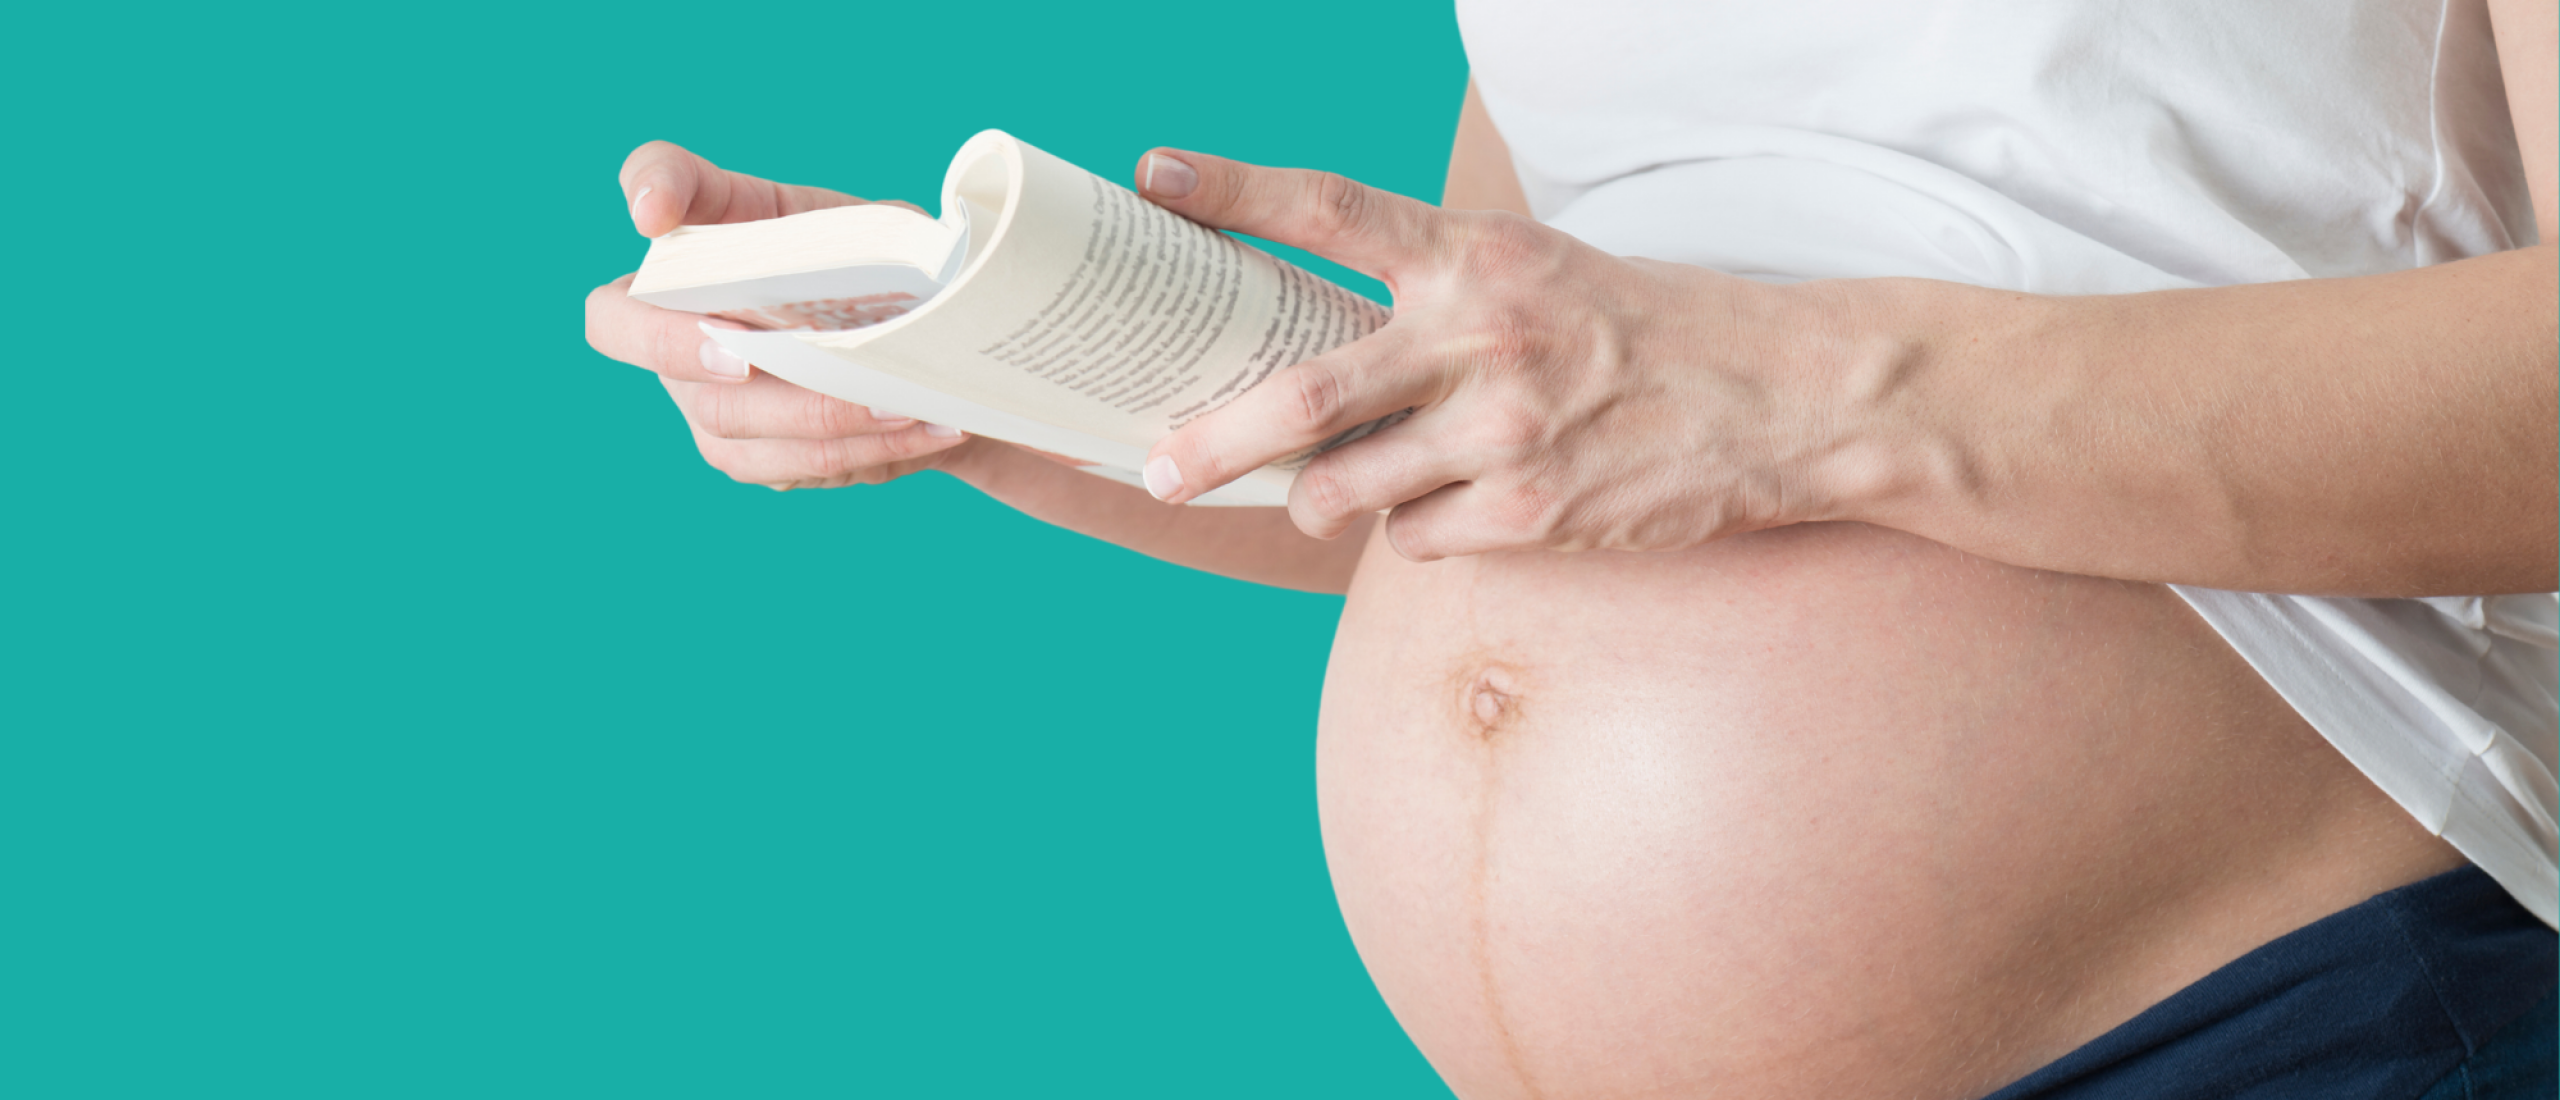 Therapeuten blog: voedingsbegeleiding tijdens zwangerschap